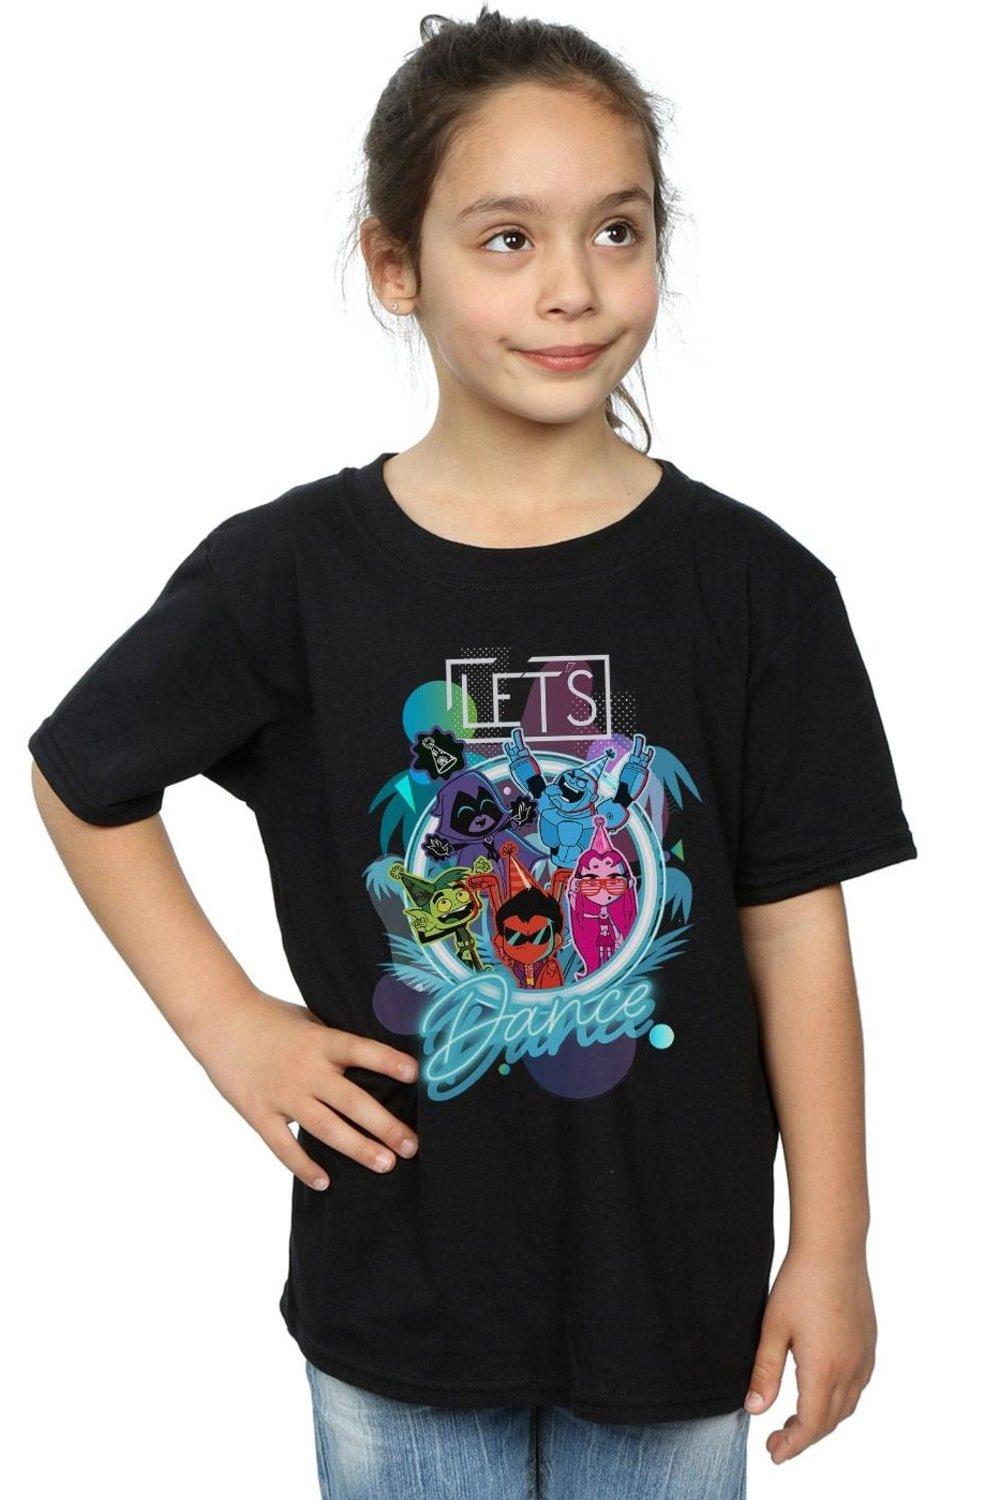 Teen Titans Go Let’s Dance Cotton T-Shirt